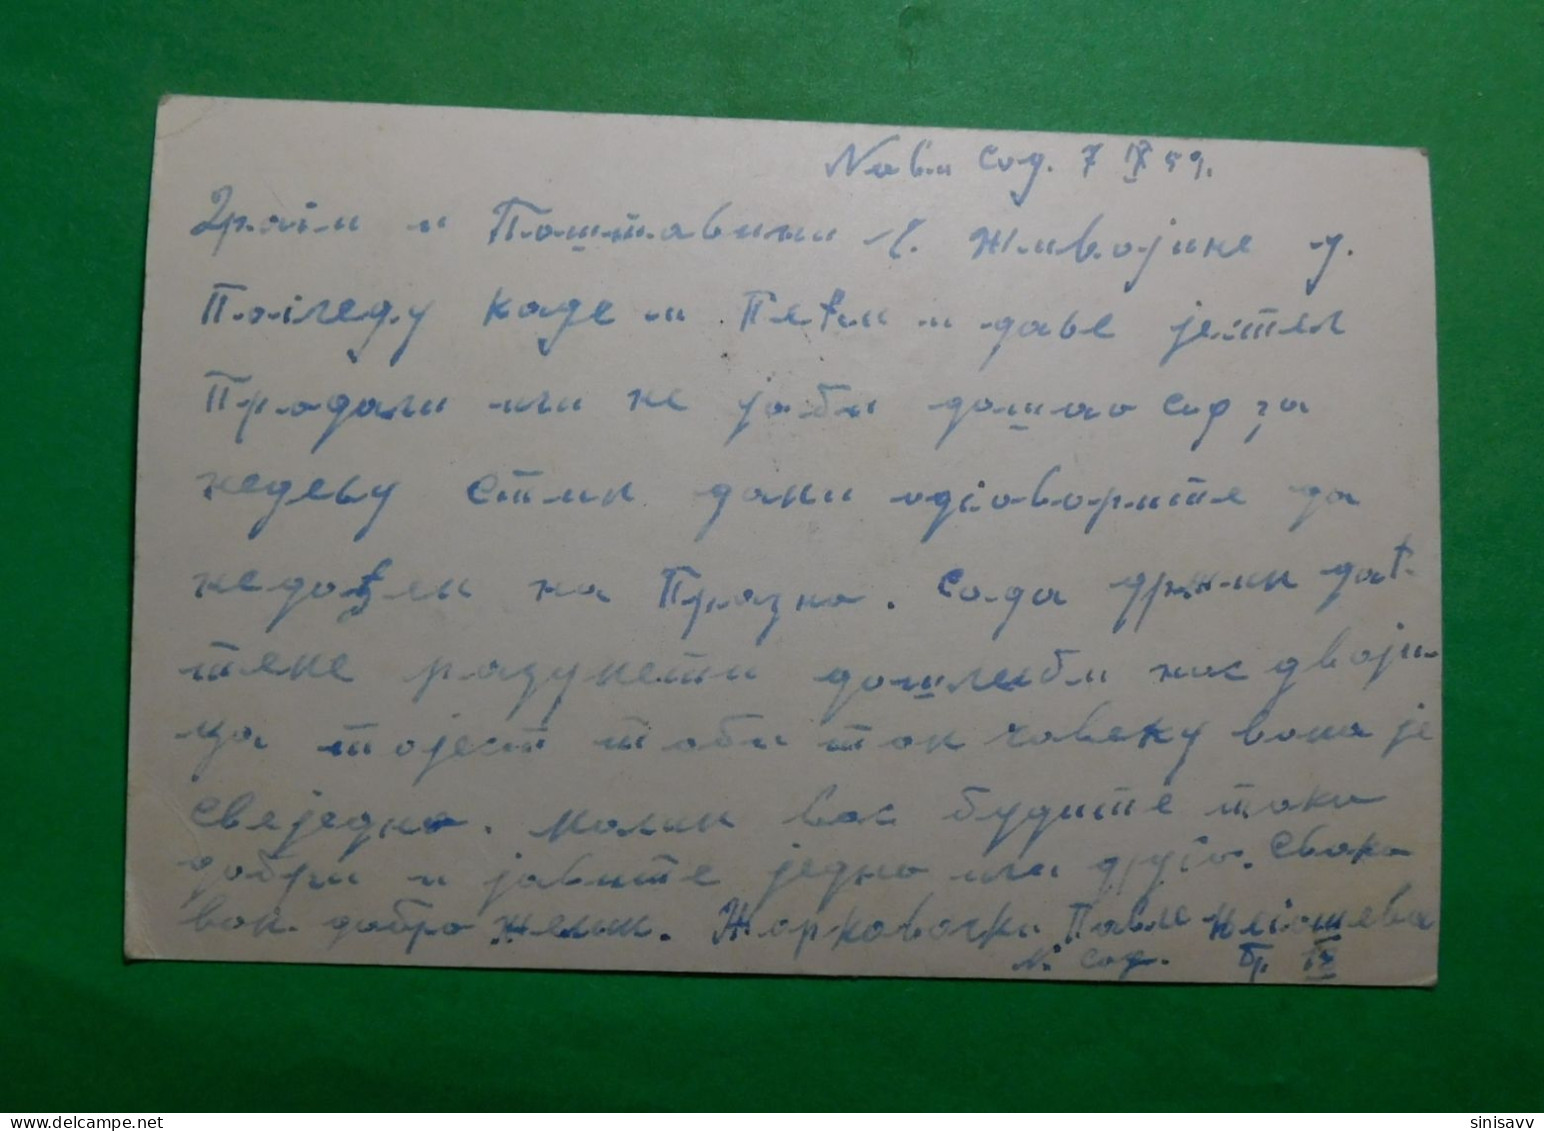 Dopisnica 1959 - Novi Sad / Sombor - Postal Stationery